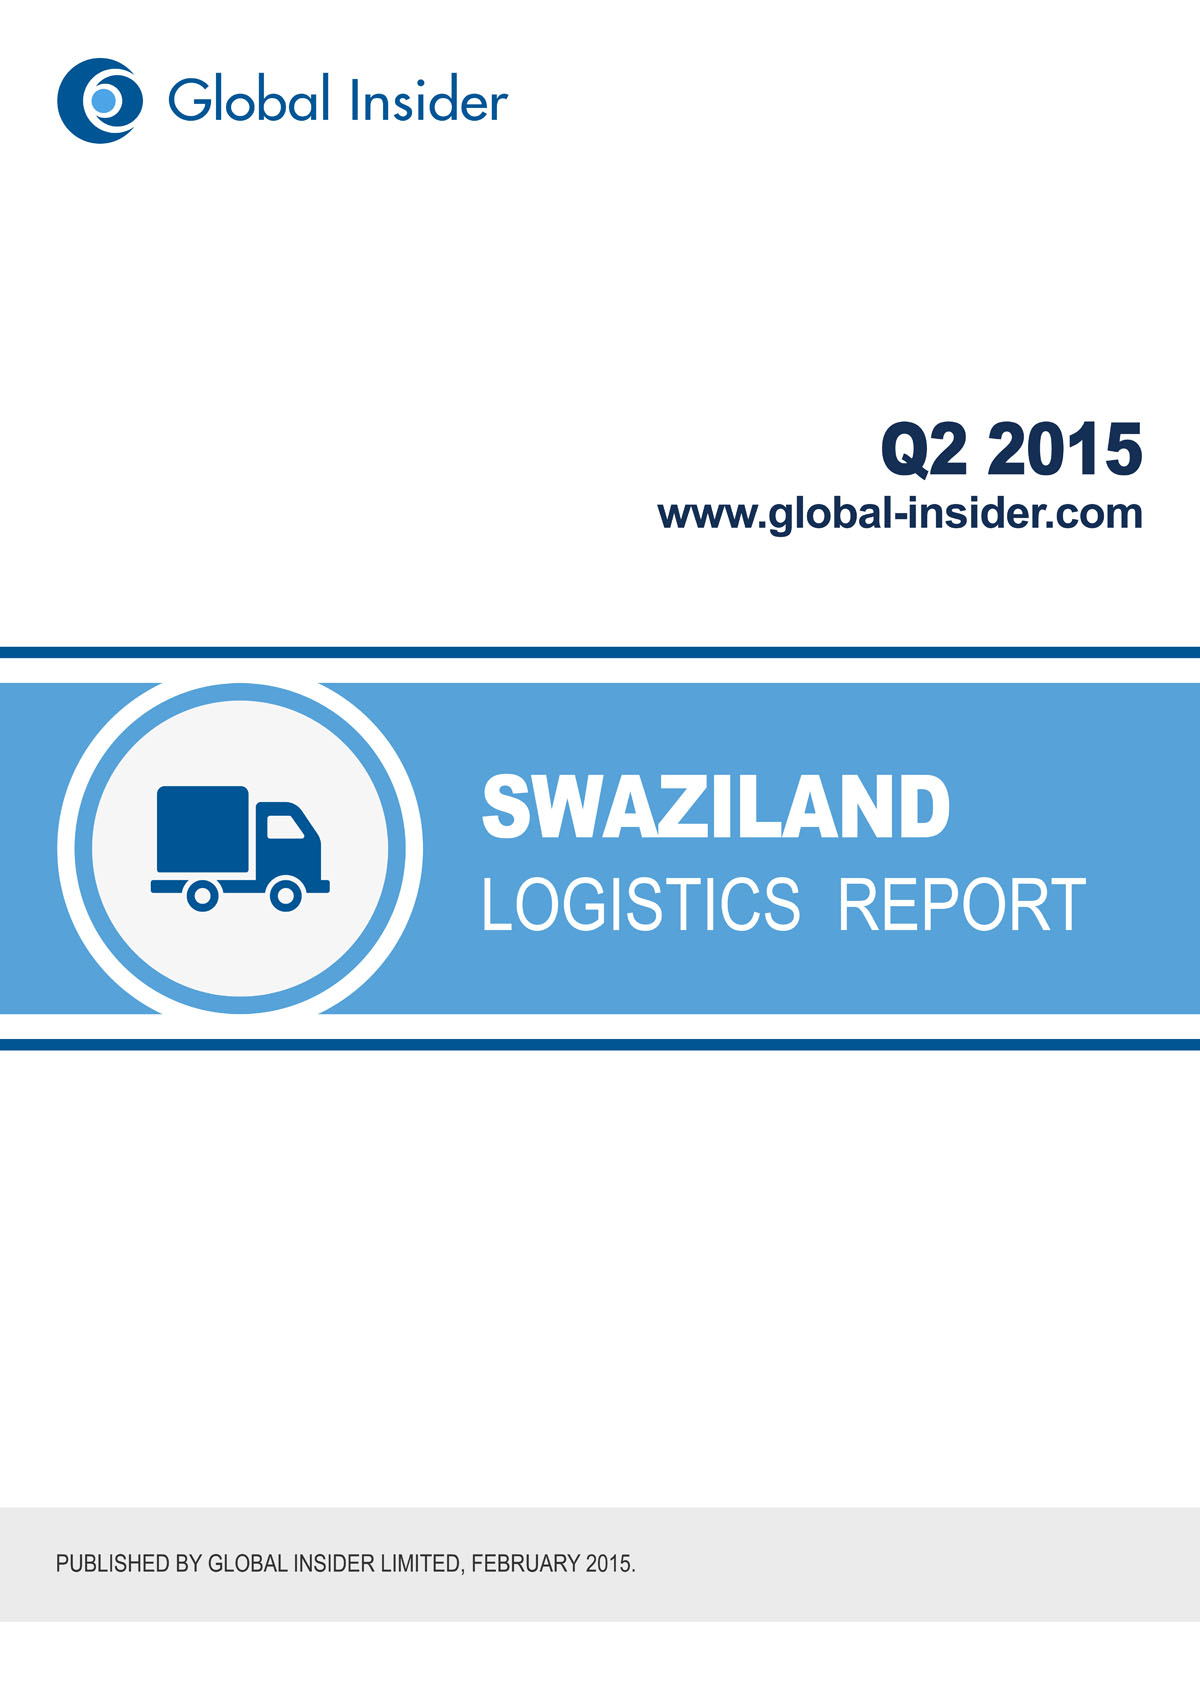 Swaziland Logistics Report